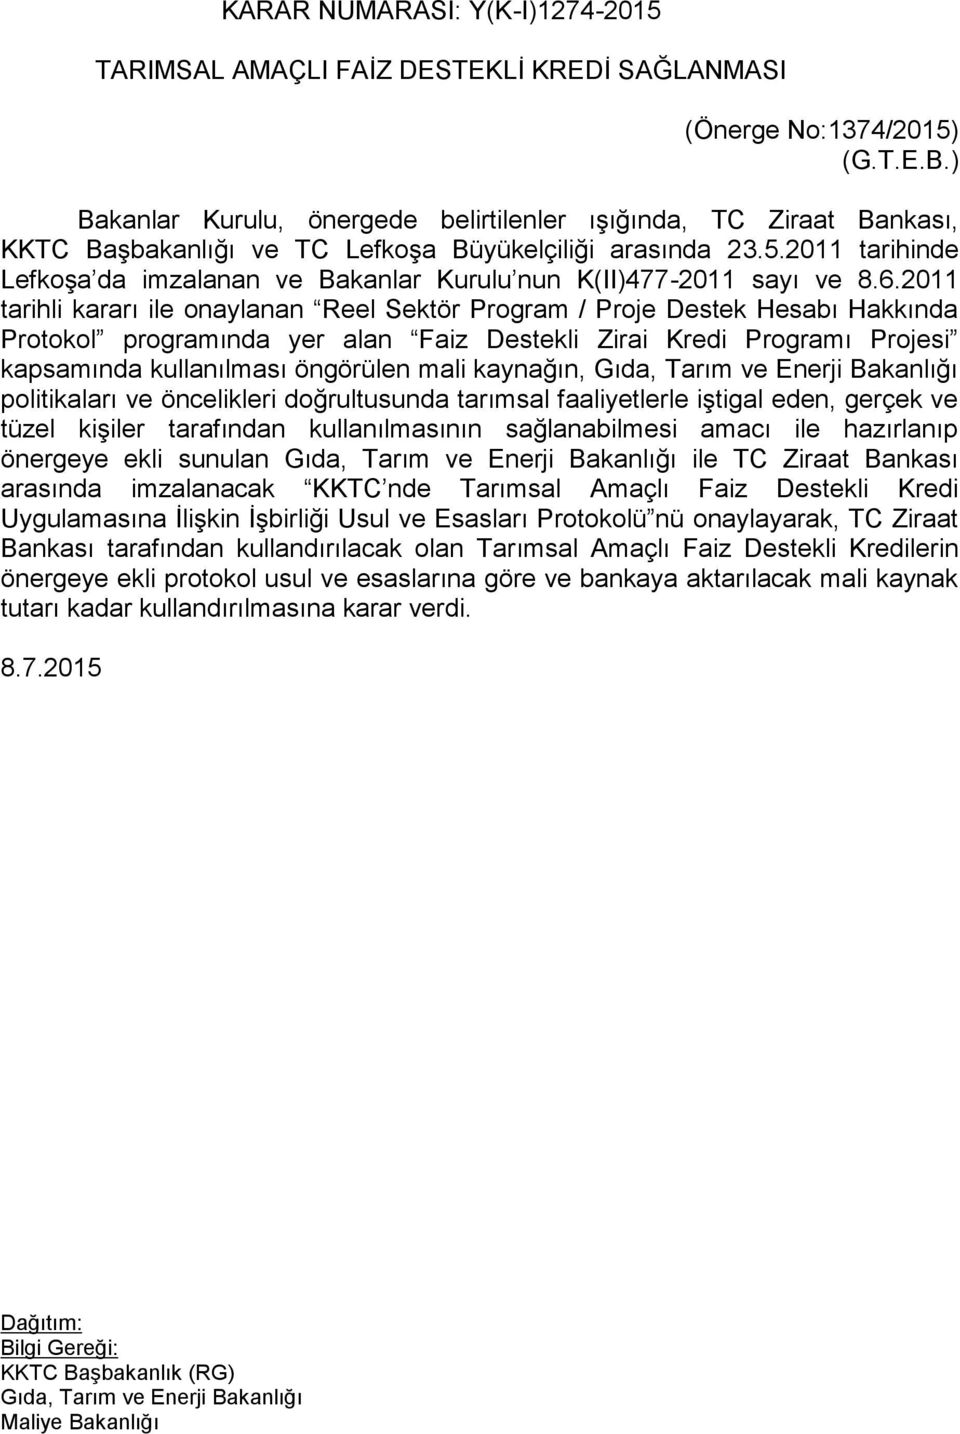 2011 tarihinde Lefkoşa da imzalanan ve Bakanlar Kurulu nun K(II)477-2011 sayı ve 8.6.